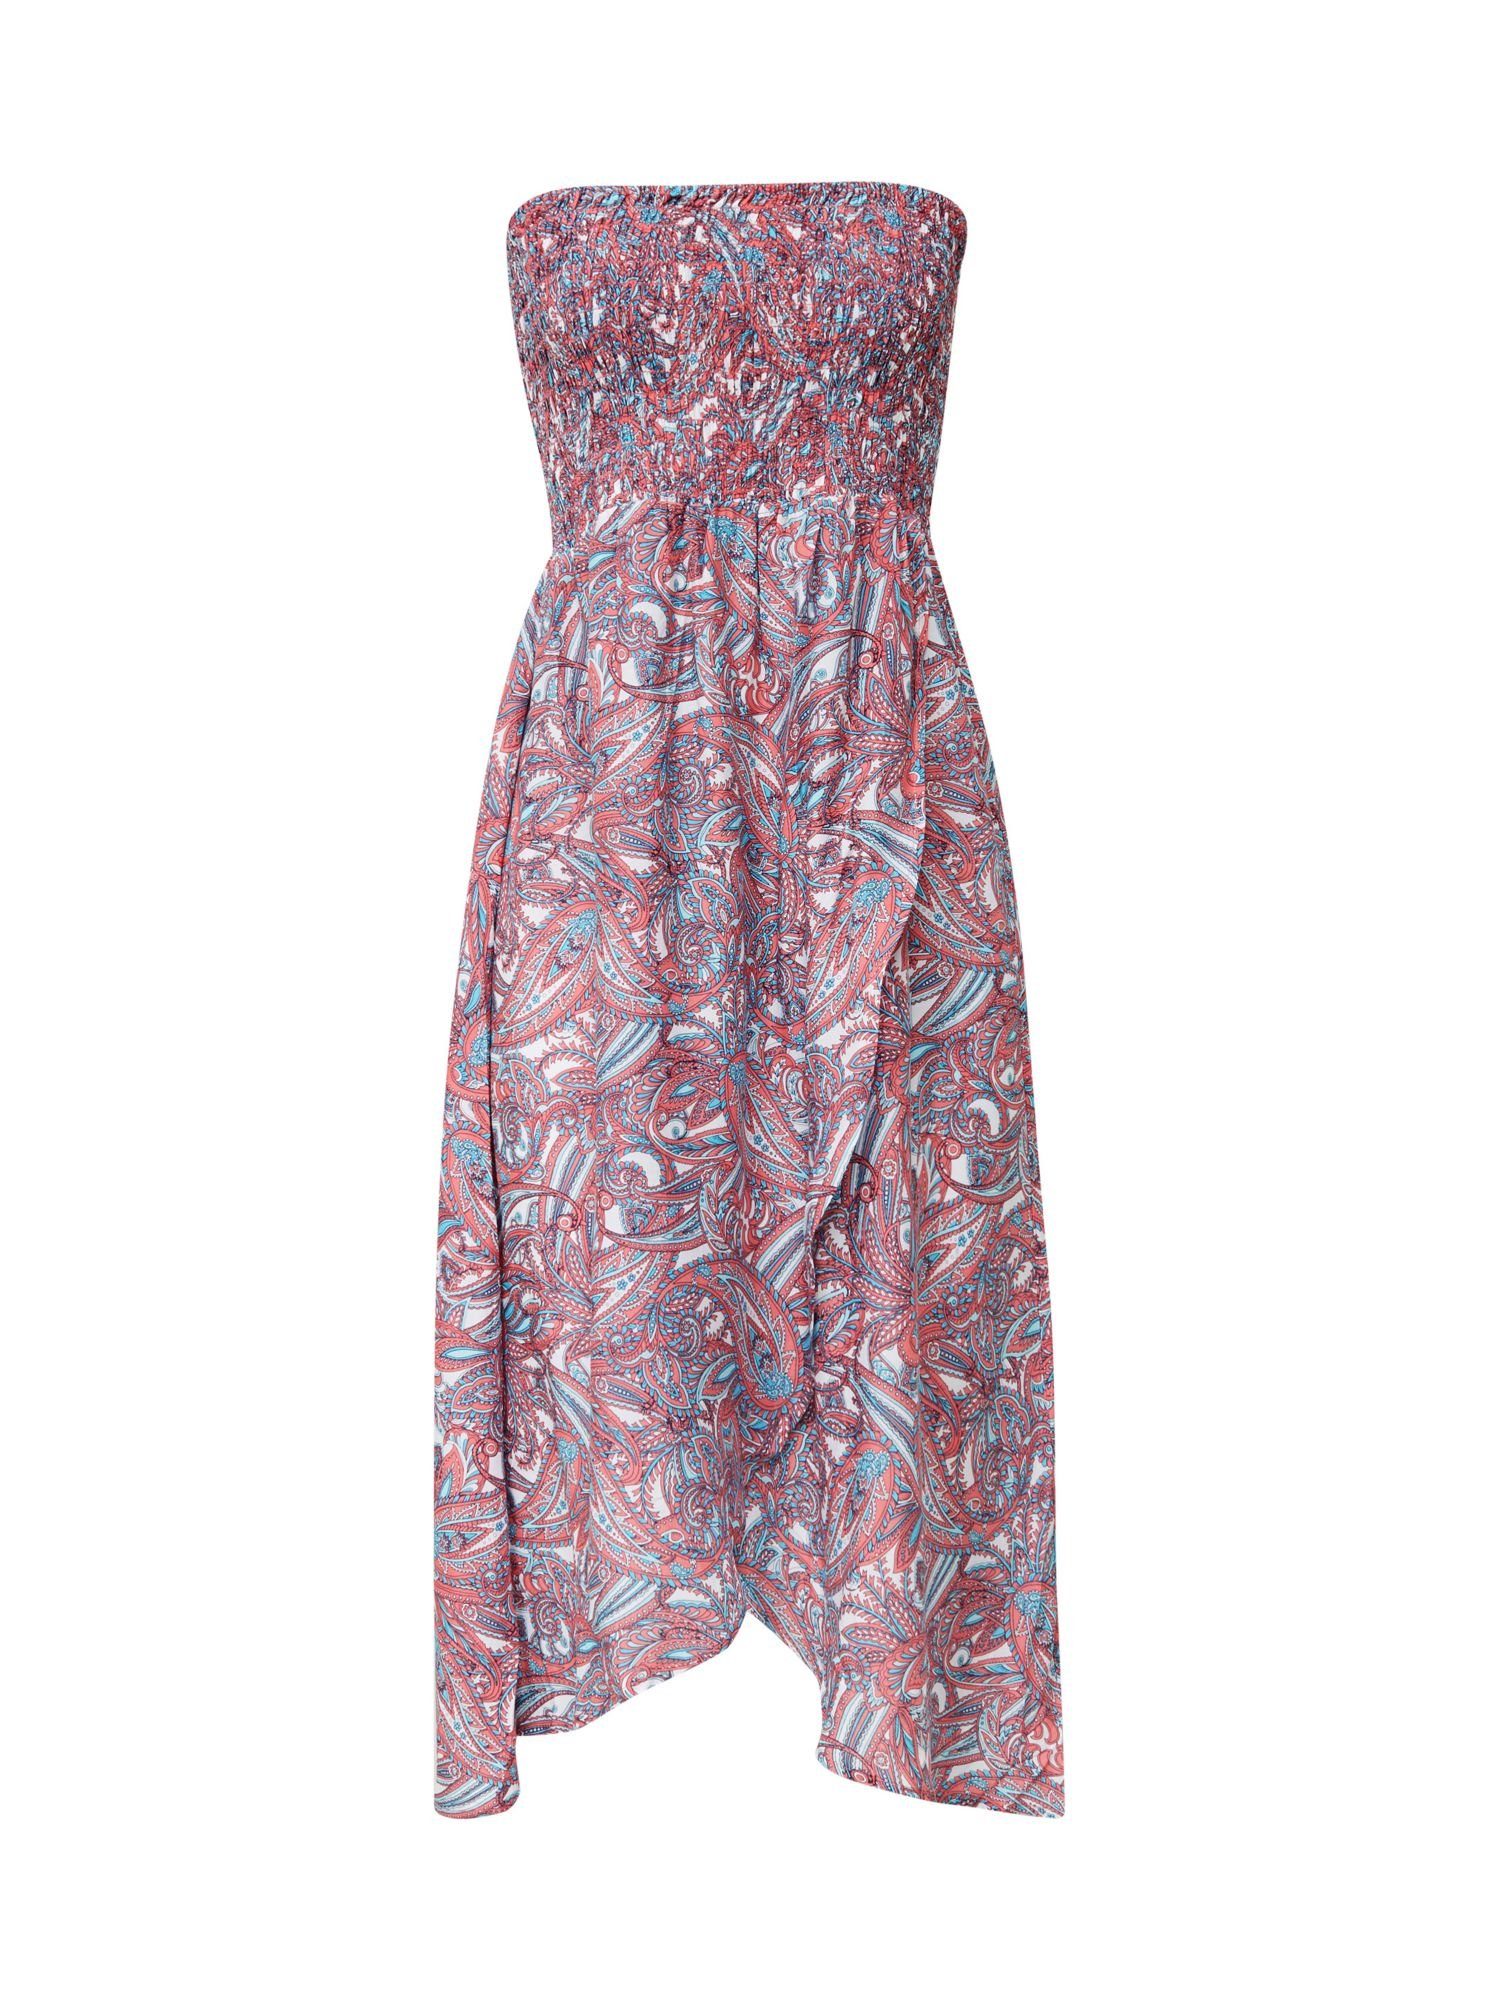 Esprit Strandkleid »Freizeit-Kleid mit Paisley-Print« online kaufen | OTTO